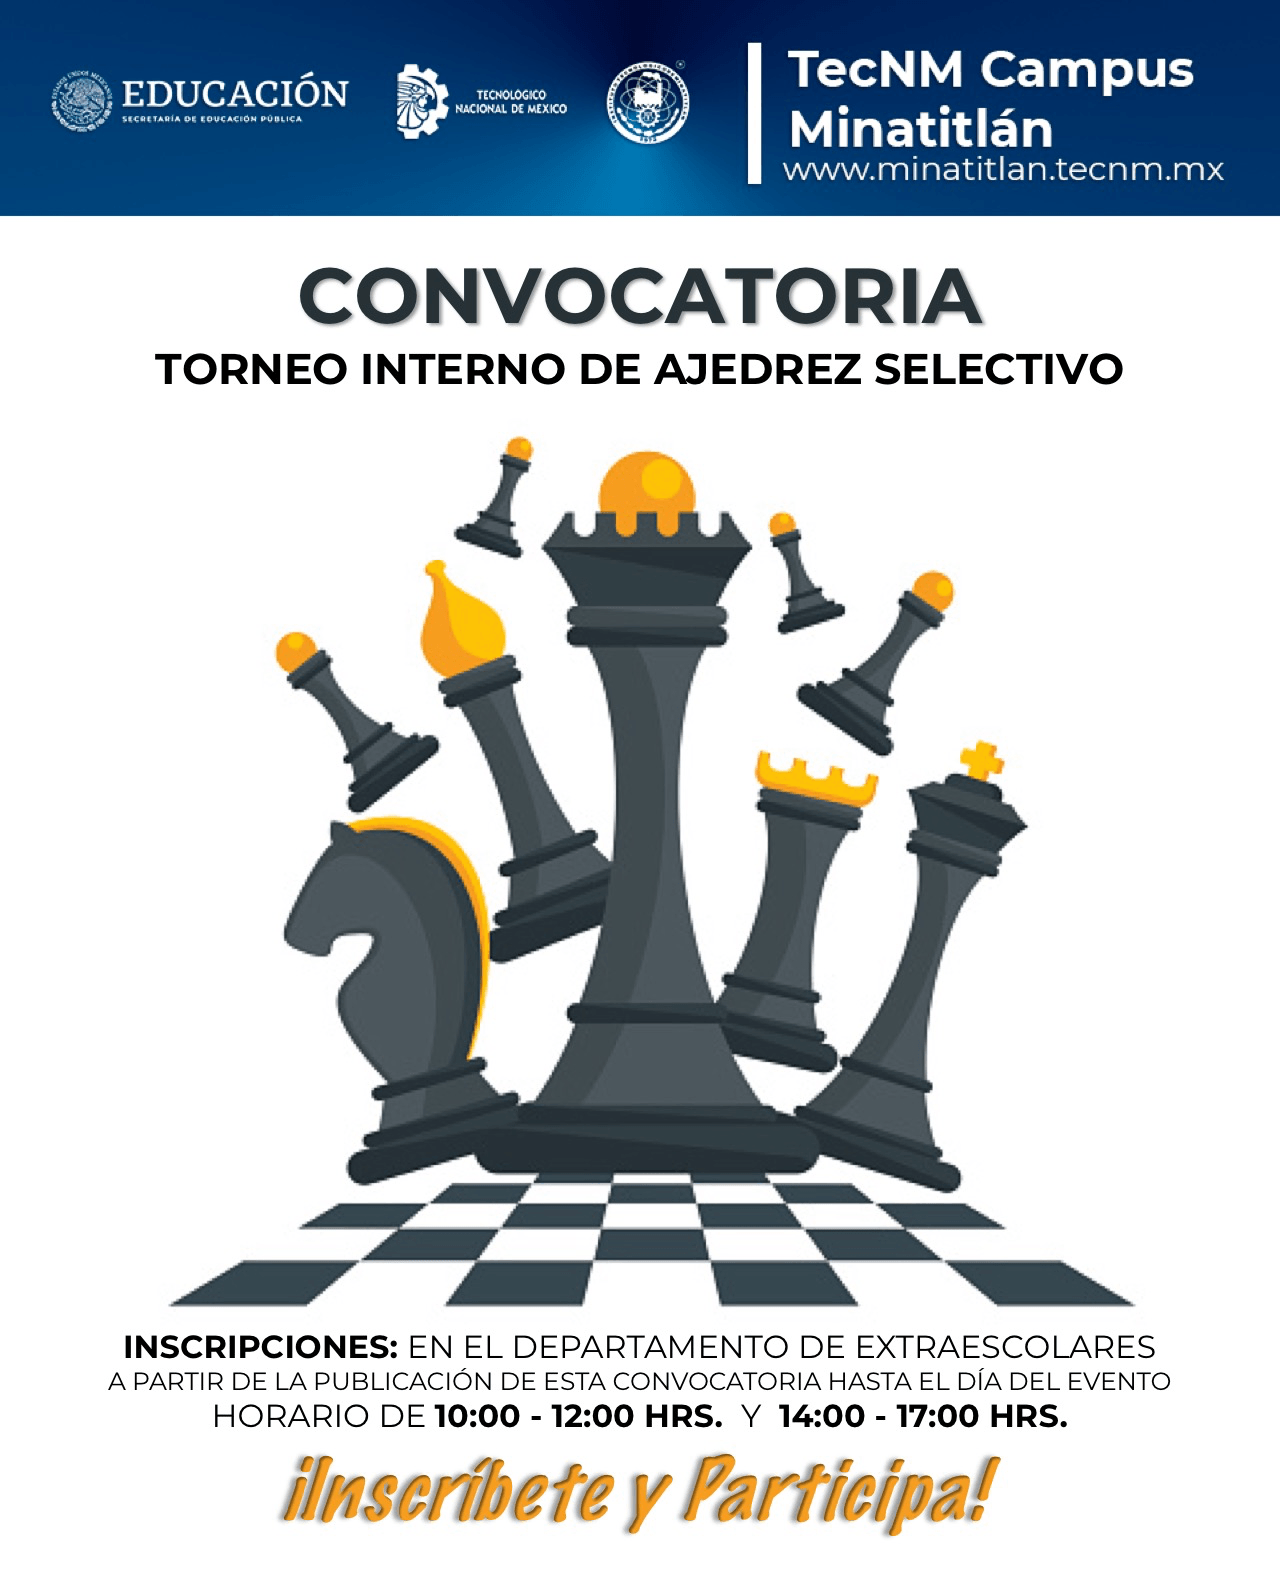 CONVOCATORIA: TORNEO INTERNO DE AJEDREZ SELECTIVO